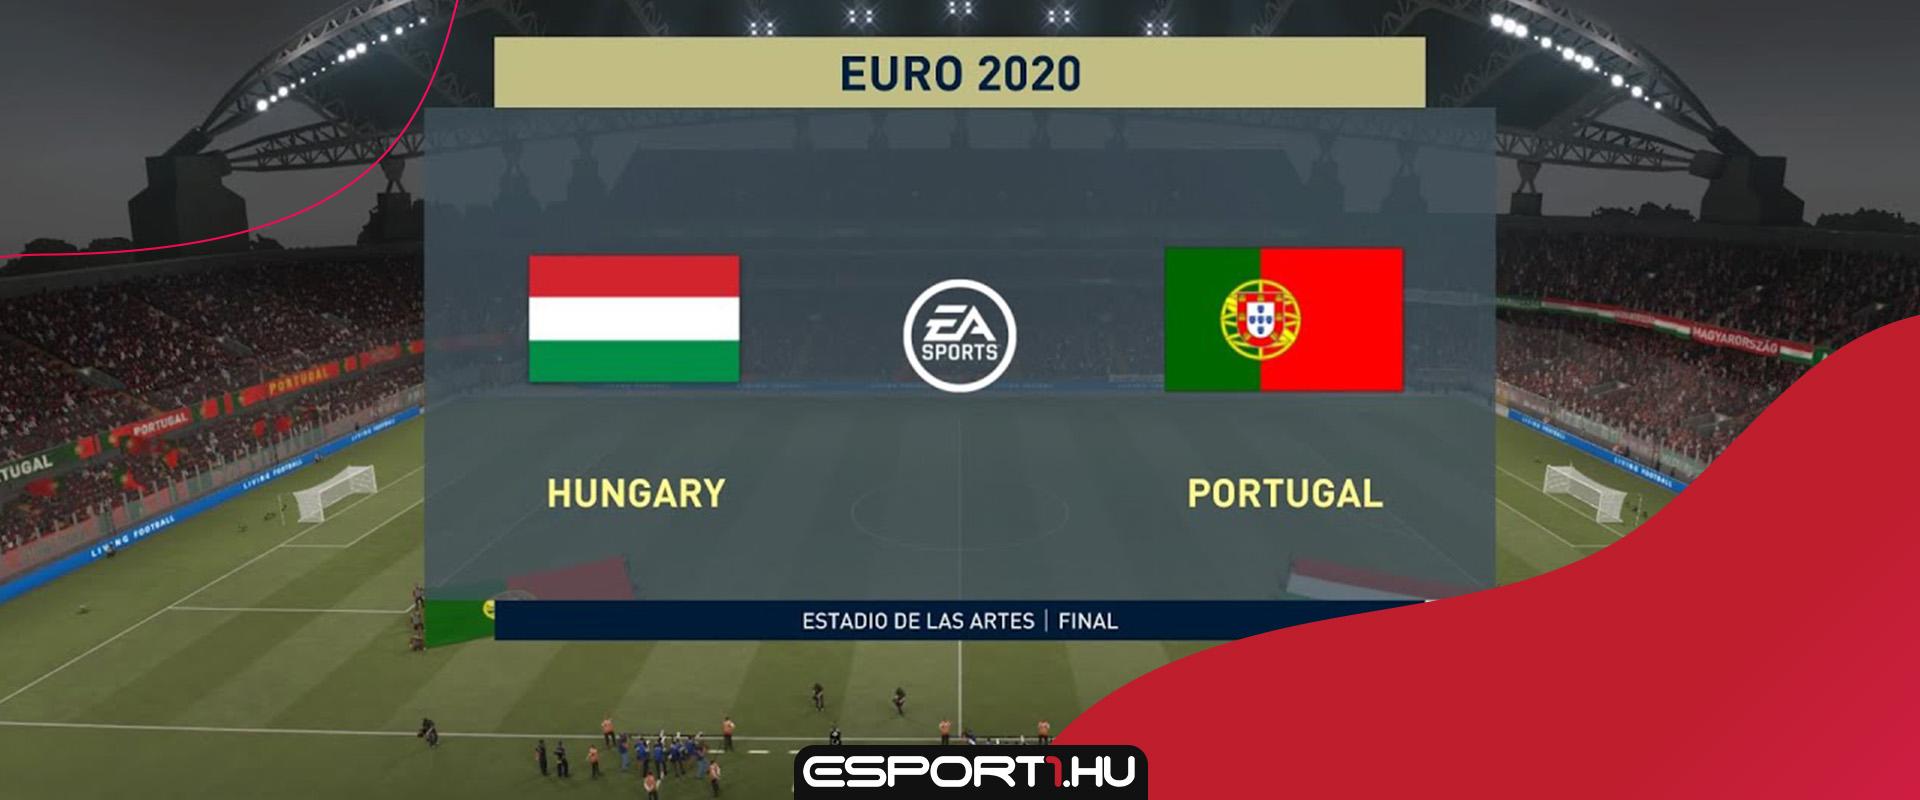 Kitalálod hány magyar játékosnak van Ultimate kártyája az Eb keretből a FIFA 21-ben?